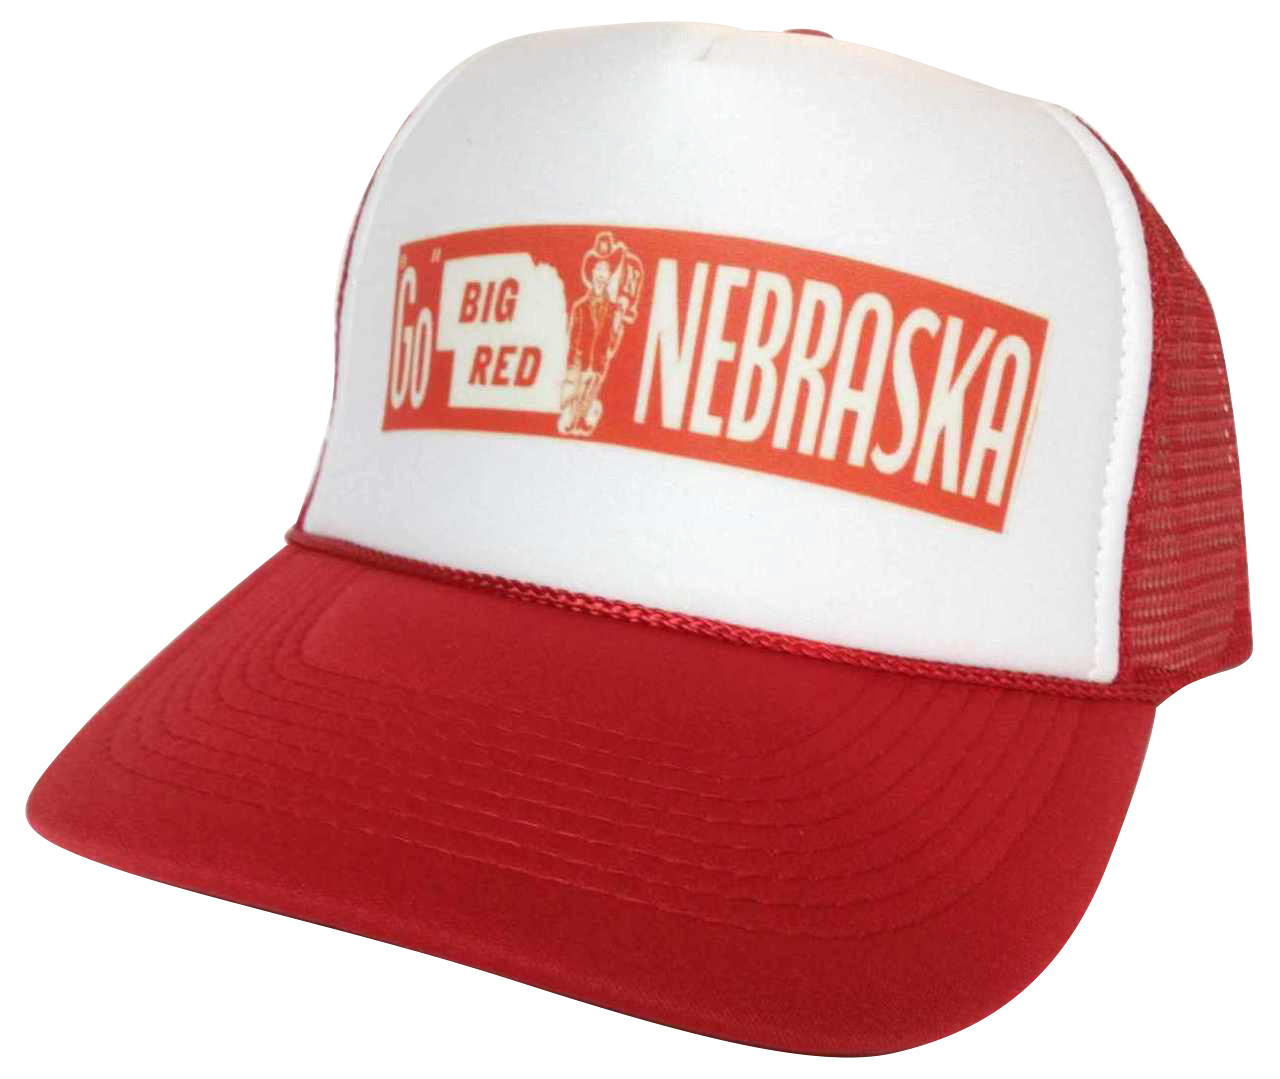 Go Big Red Hat, Nebraska Hat, Trucker Hat, Trucker Hats, Mesh Hat